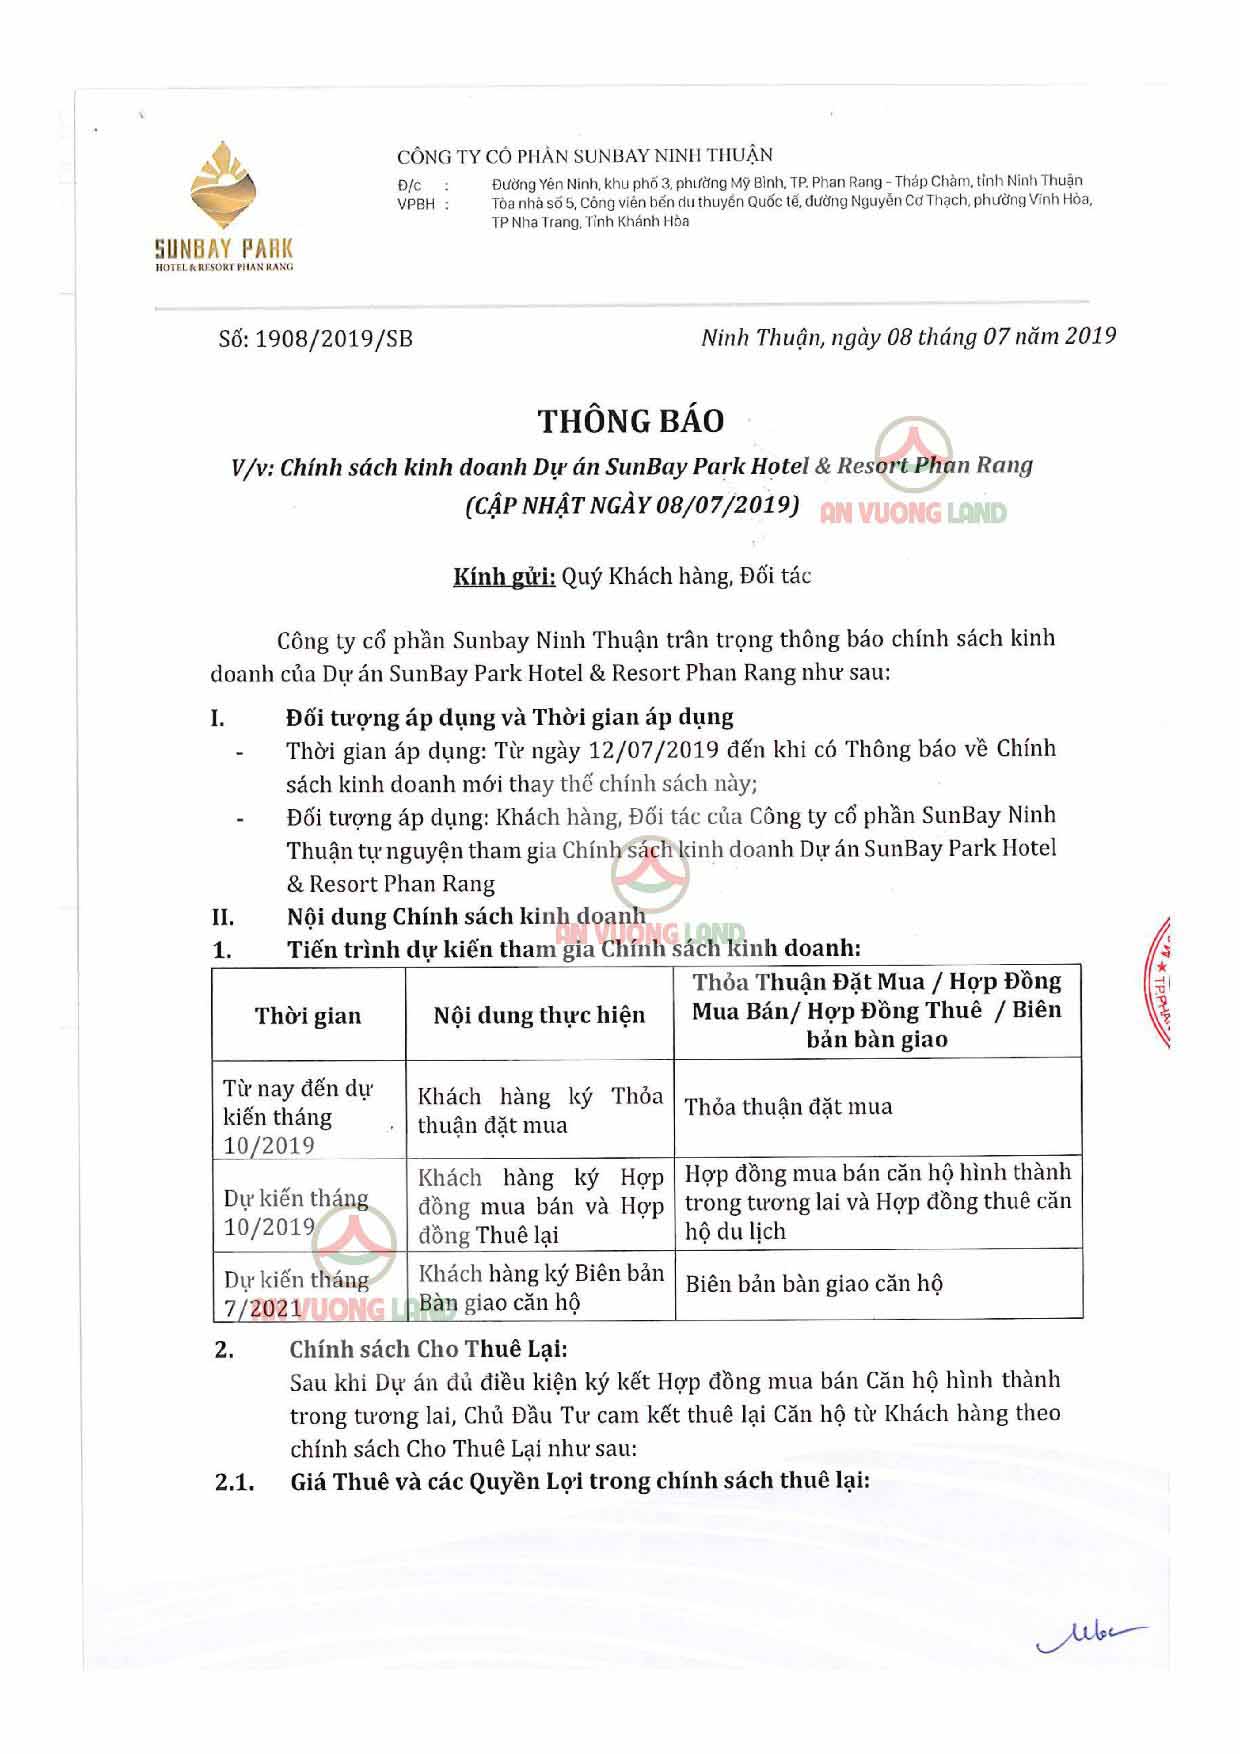 Chính sách bán hàng Sunbay Park Phan Rang Ninh Thuận (1)